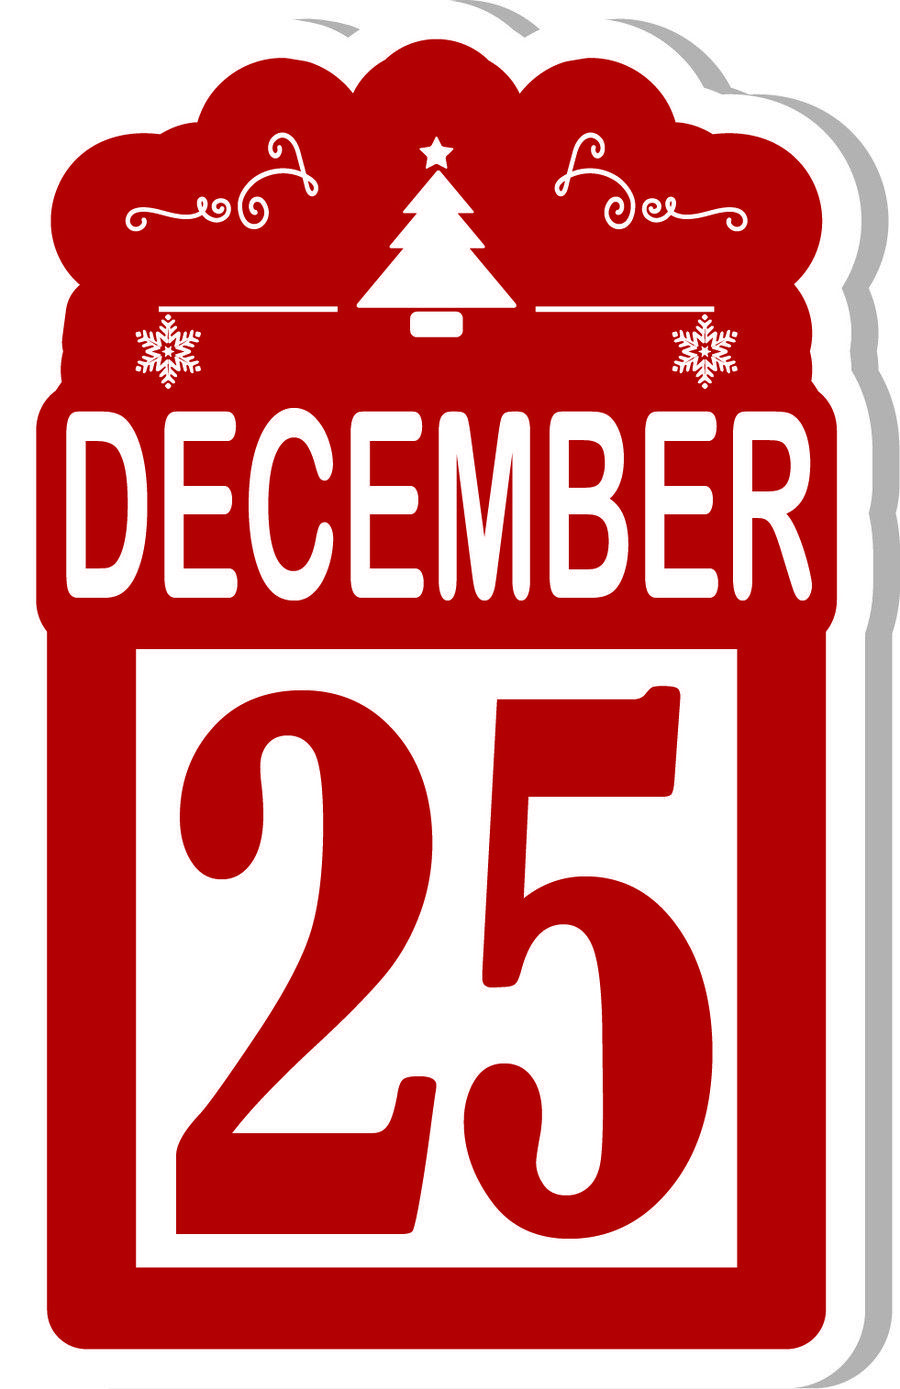 December Logo - Entry by eko240 for Design a Logo for December 25